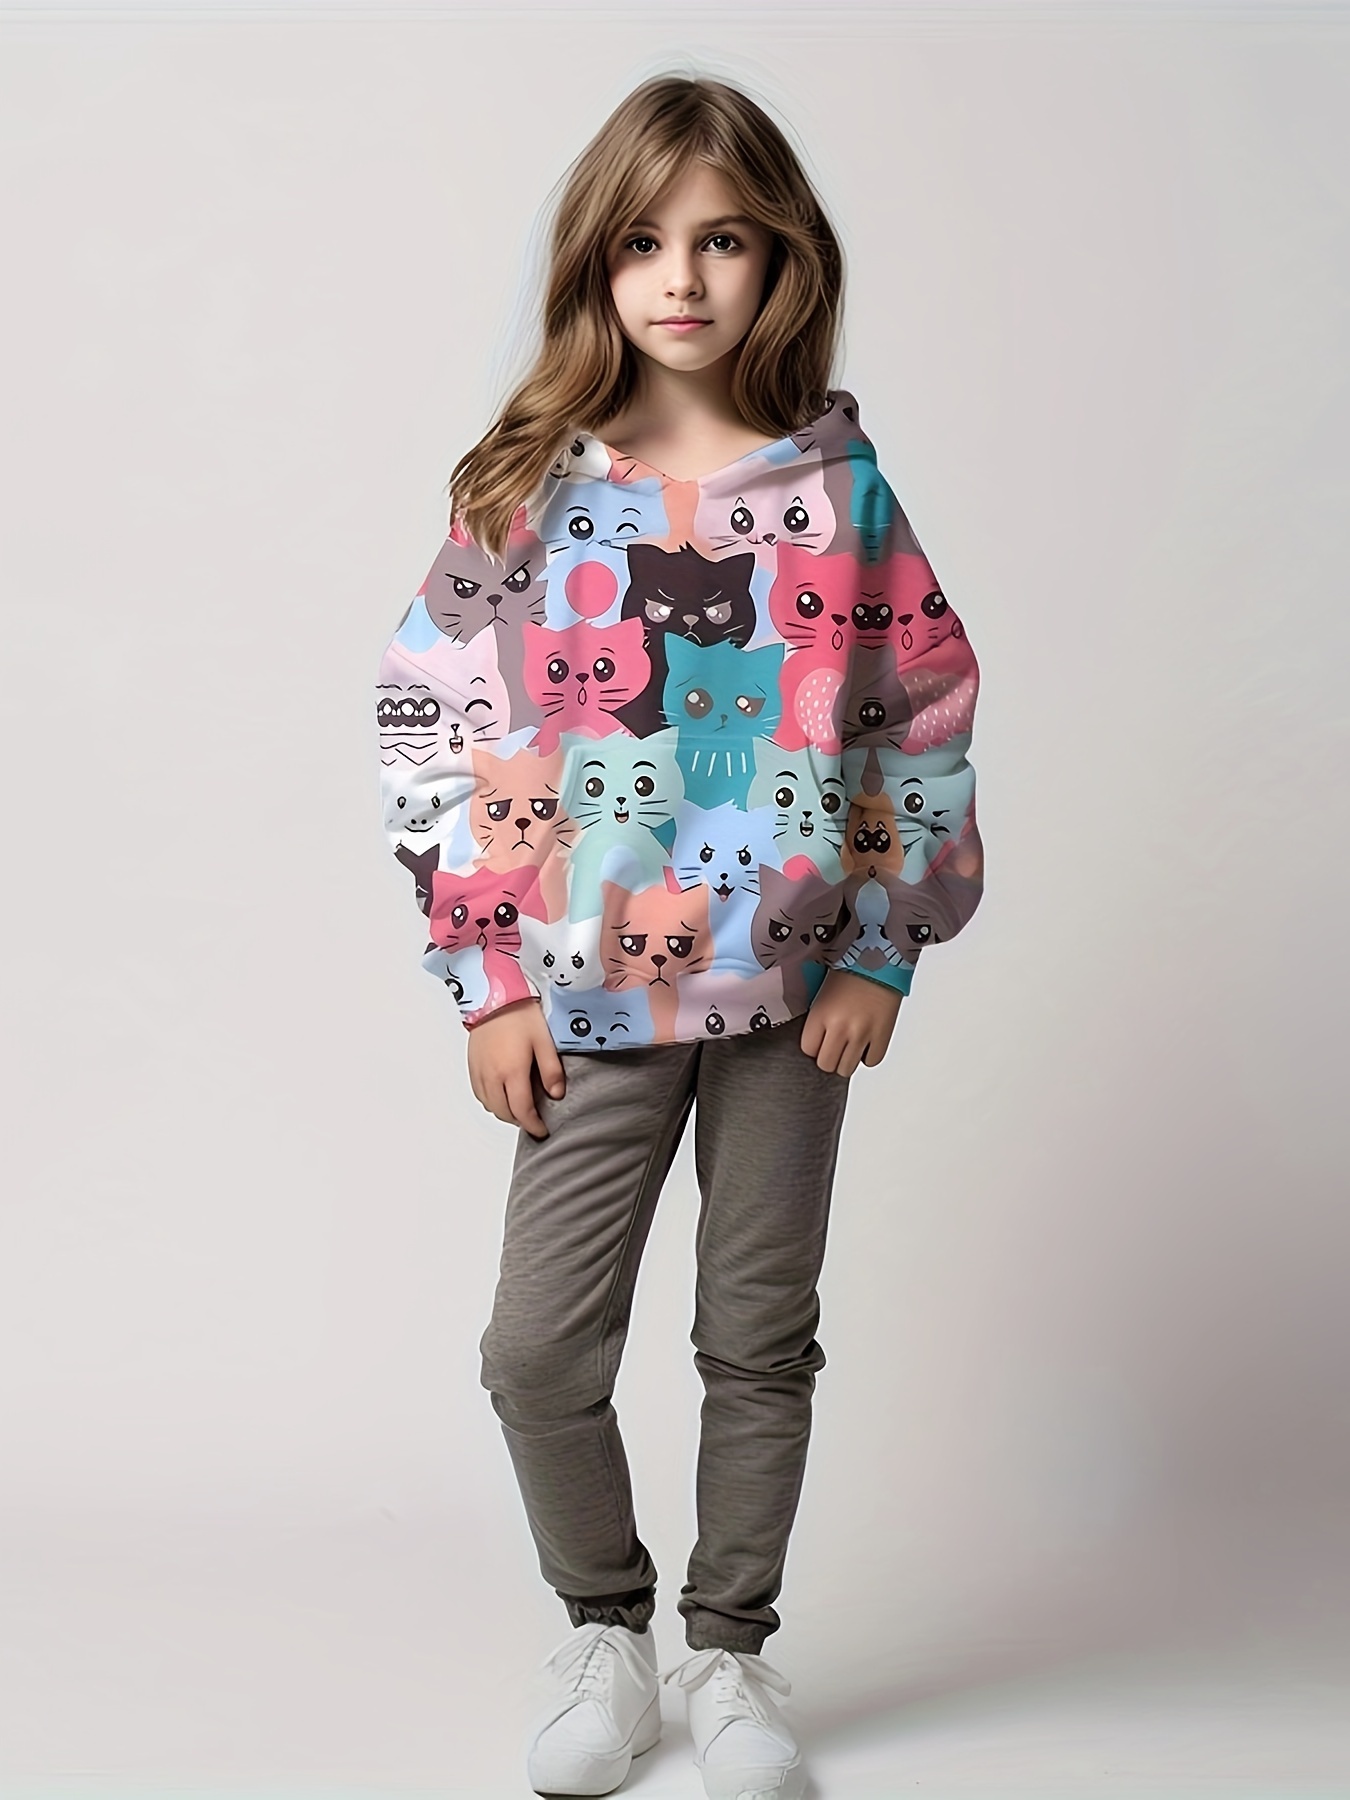 Junior Girls' [8-16] Allover Print Crew Fleece Sweatshirt